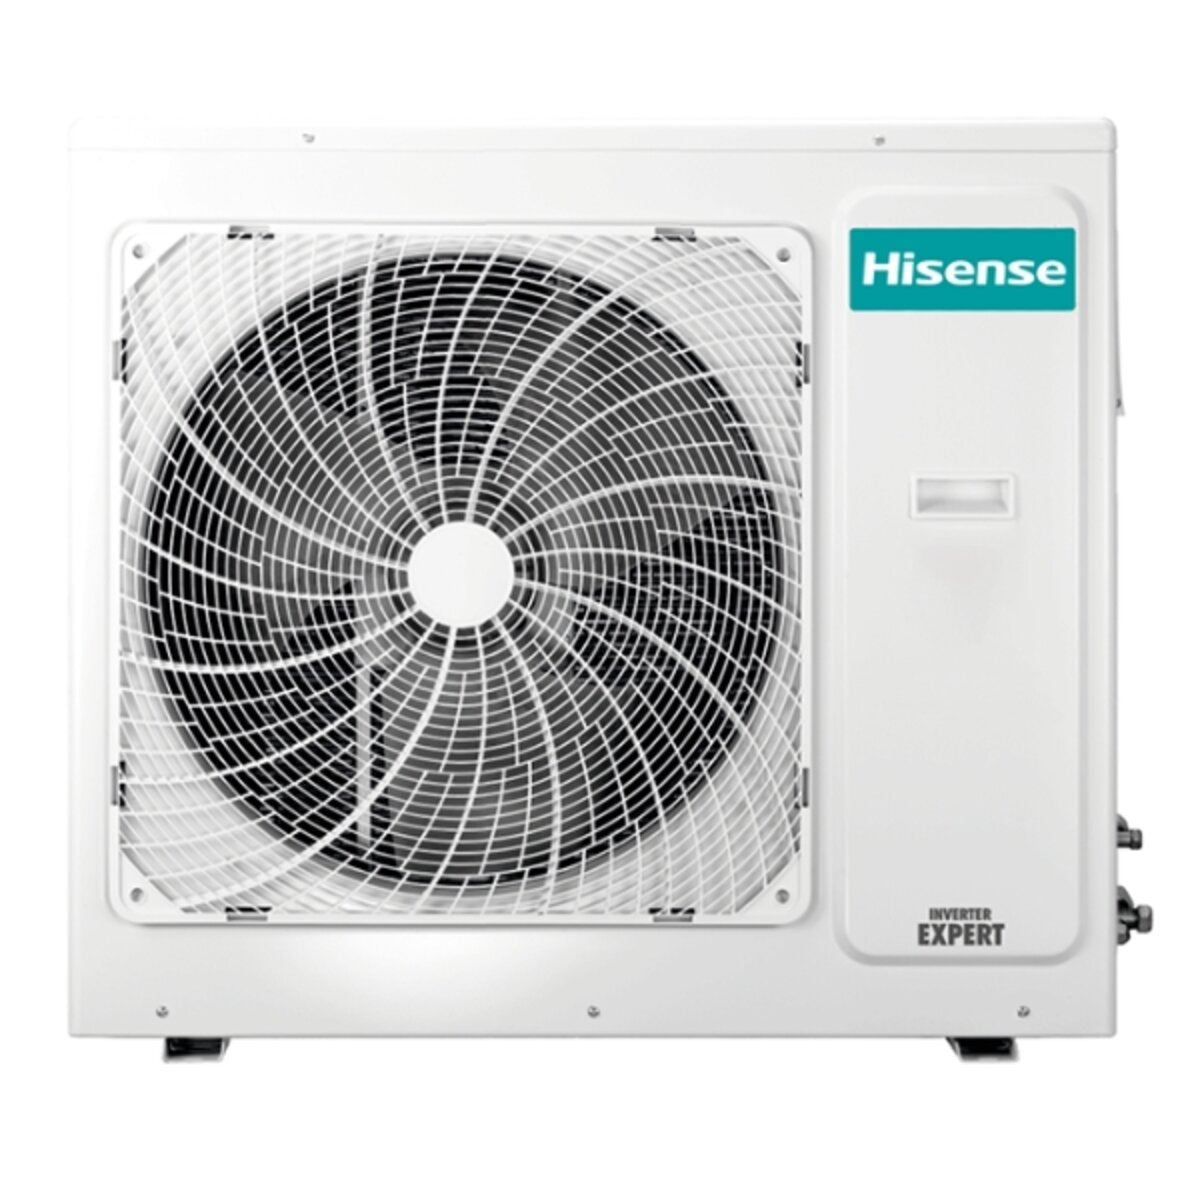 Hisense air conditioner Cassette ACT quadri split 9000+12000+12000+12000 BTU inverter A++ outdoor unit 10 kW